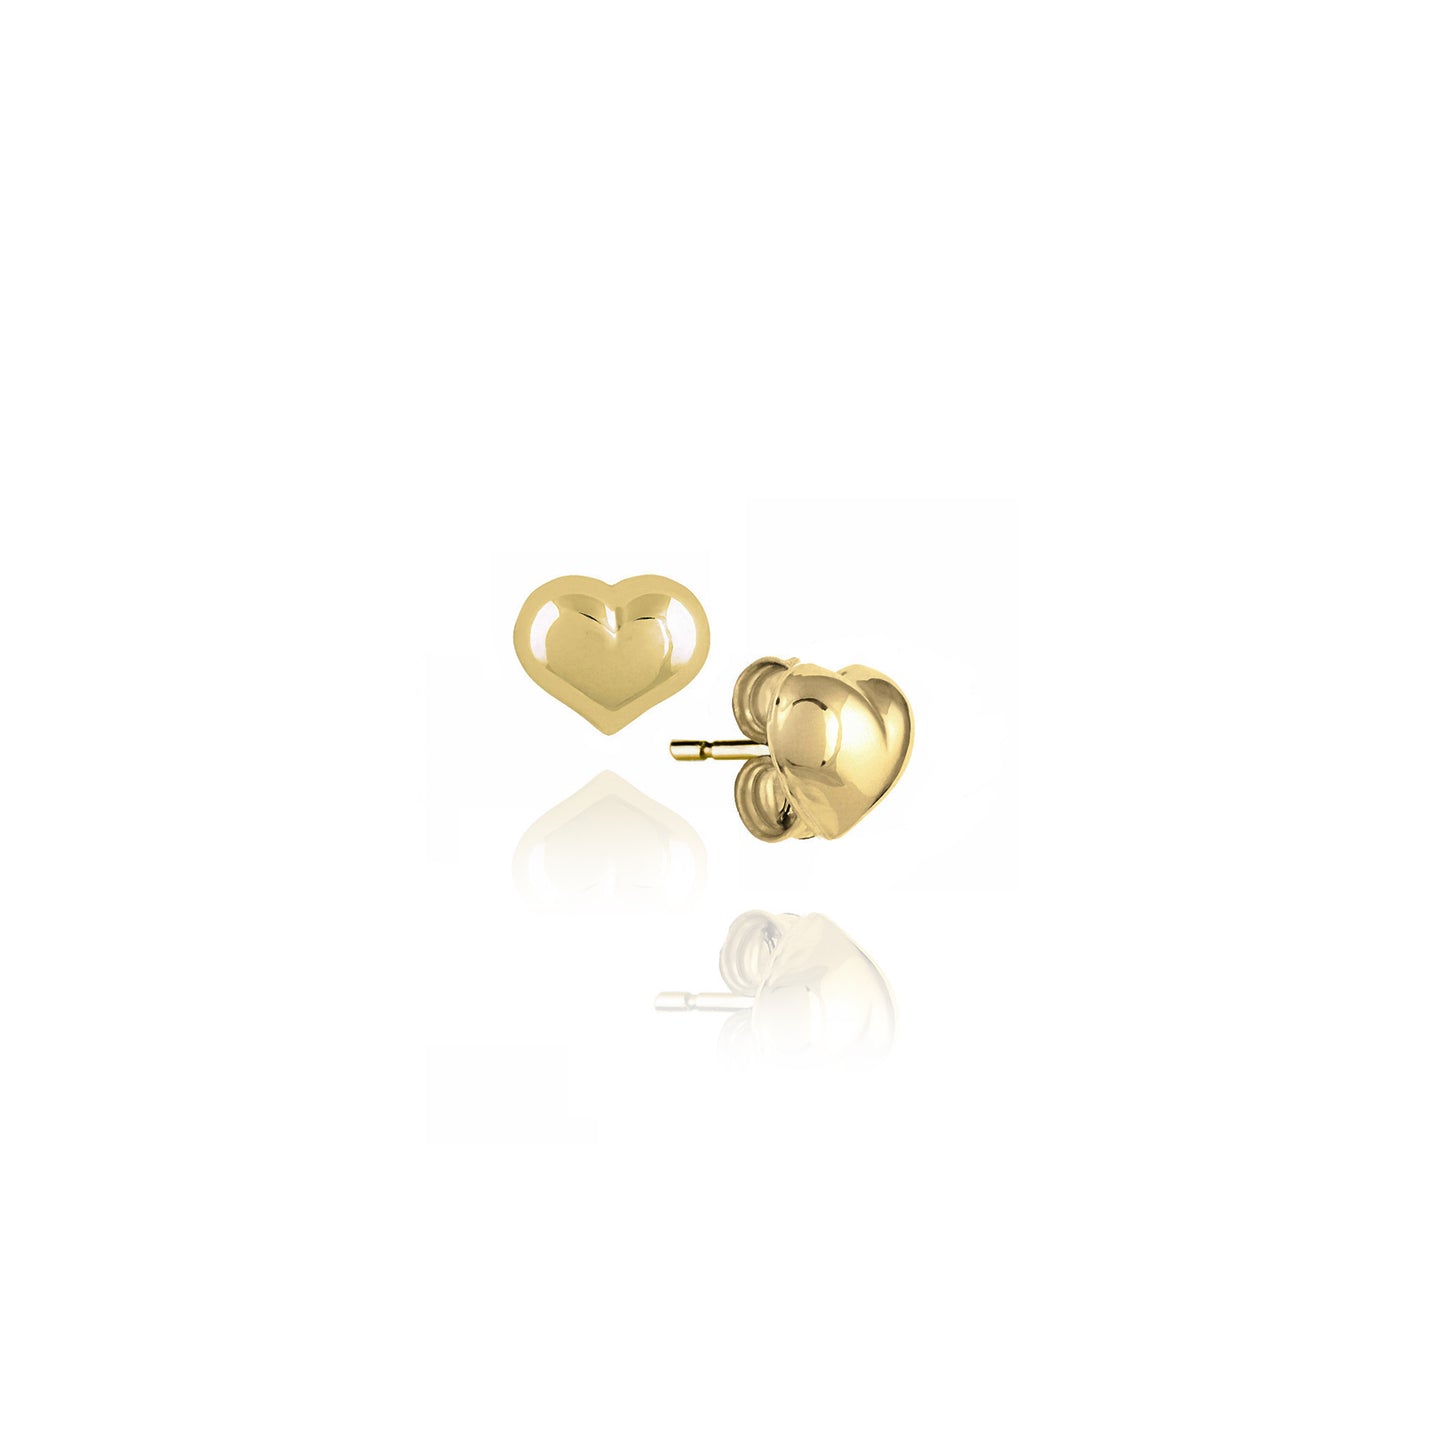 Heart Earrings in Real Gold 